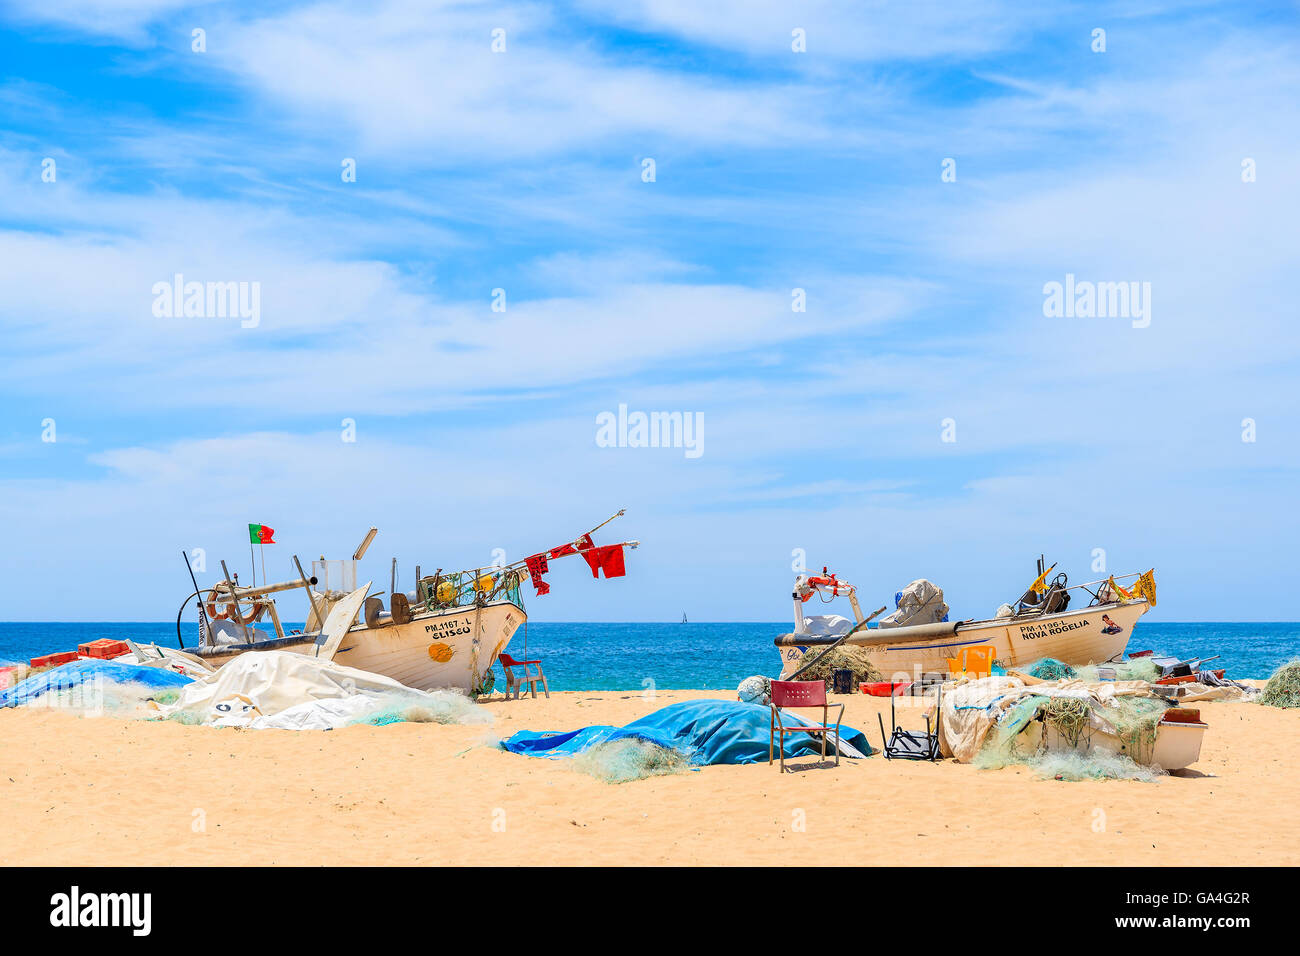 ARMACAO DE PERA, PORTUGAL - 17 MAI 2015 : deux bateaux de pêche colorés typiques sur la plage de sable contre la mer bleue à Armacao de Pera ville balnéaire, le Portugal. Banque D'Images